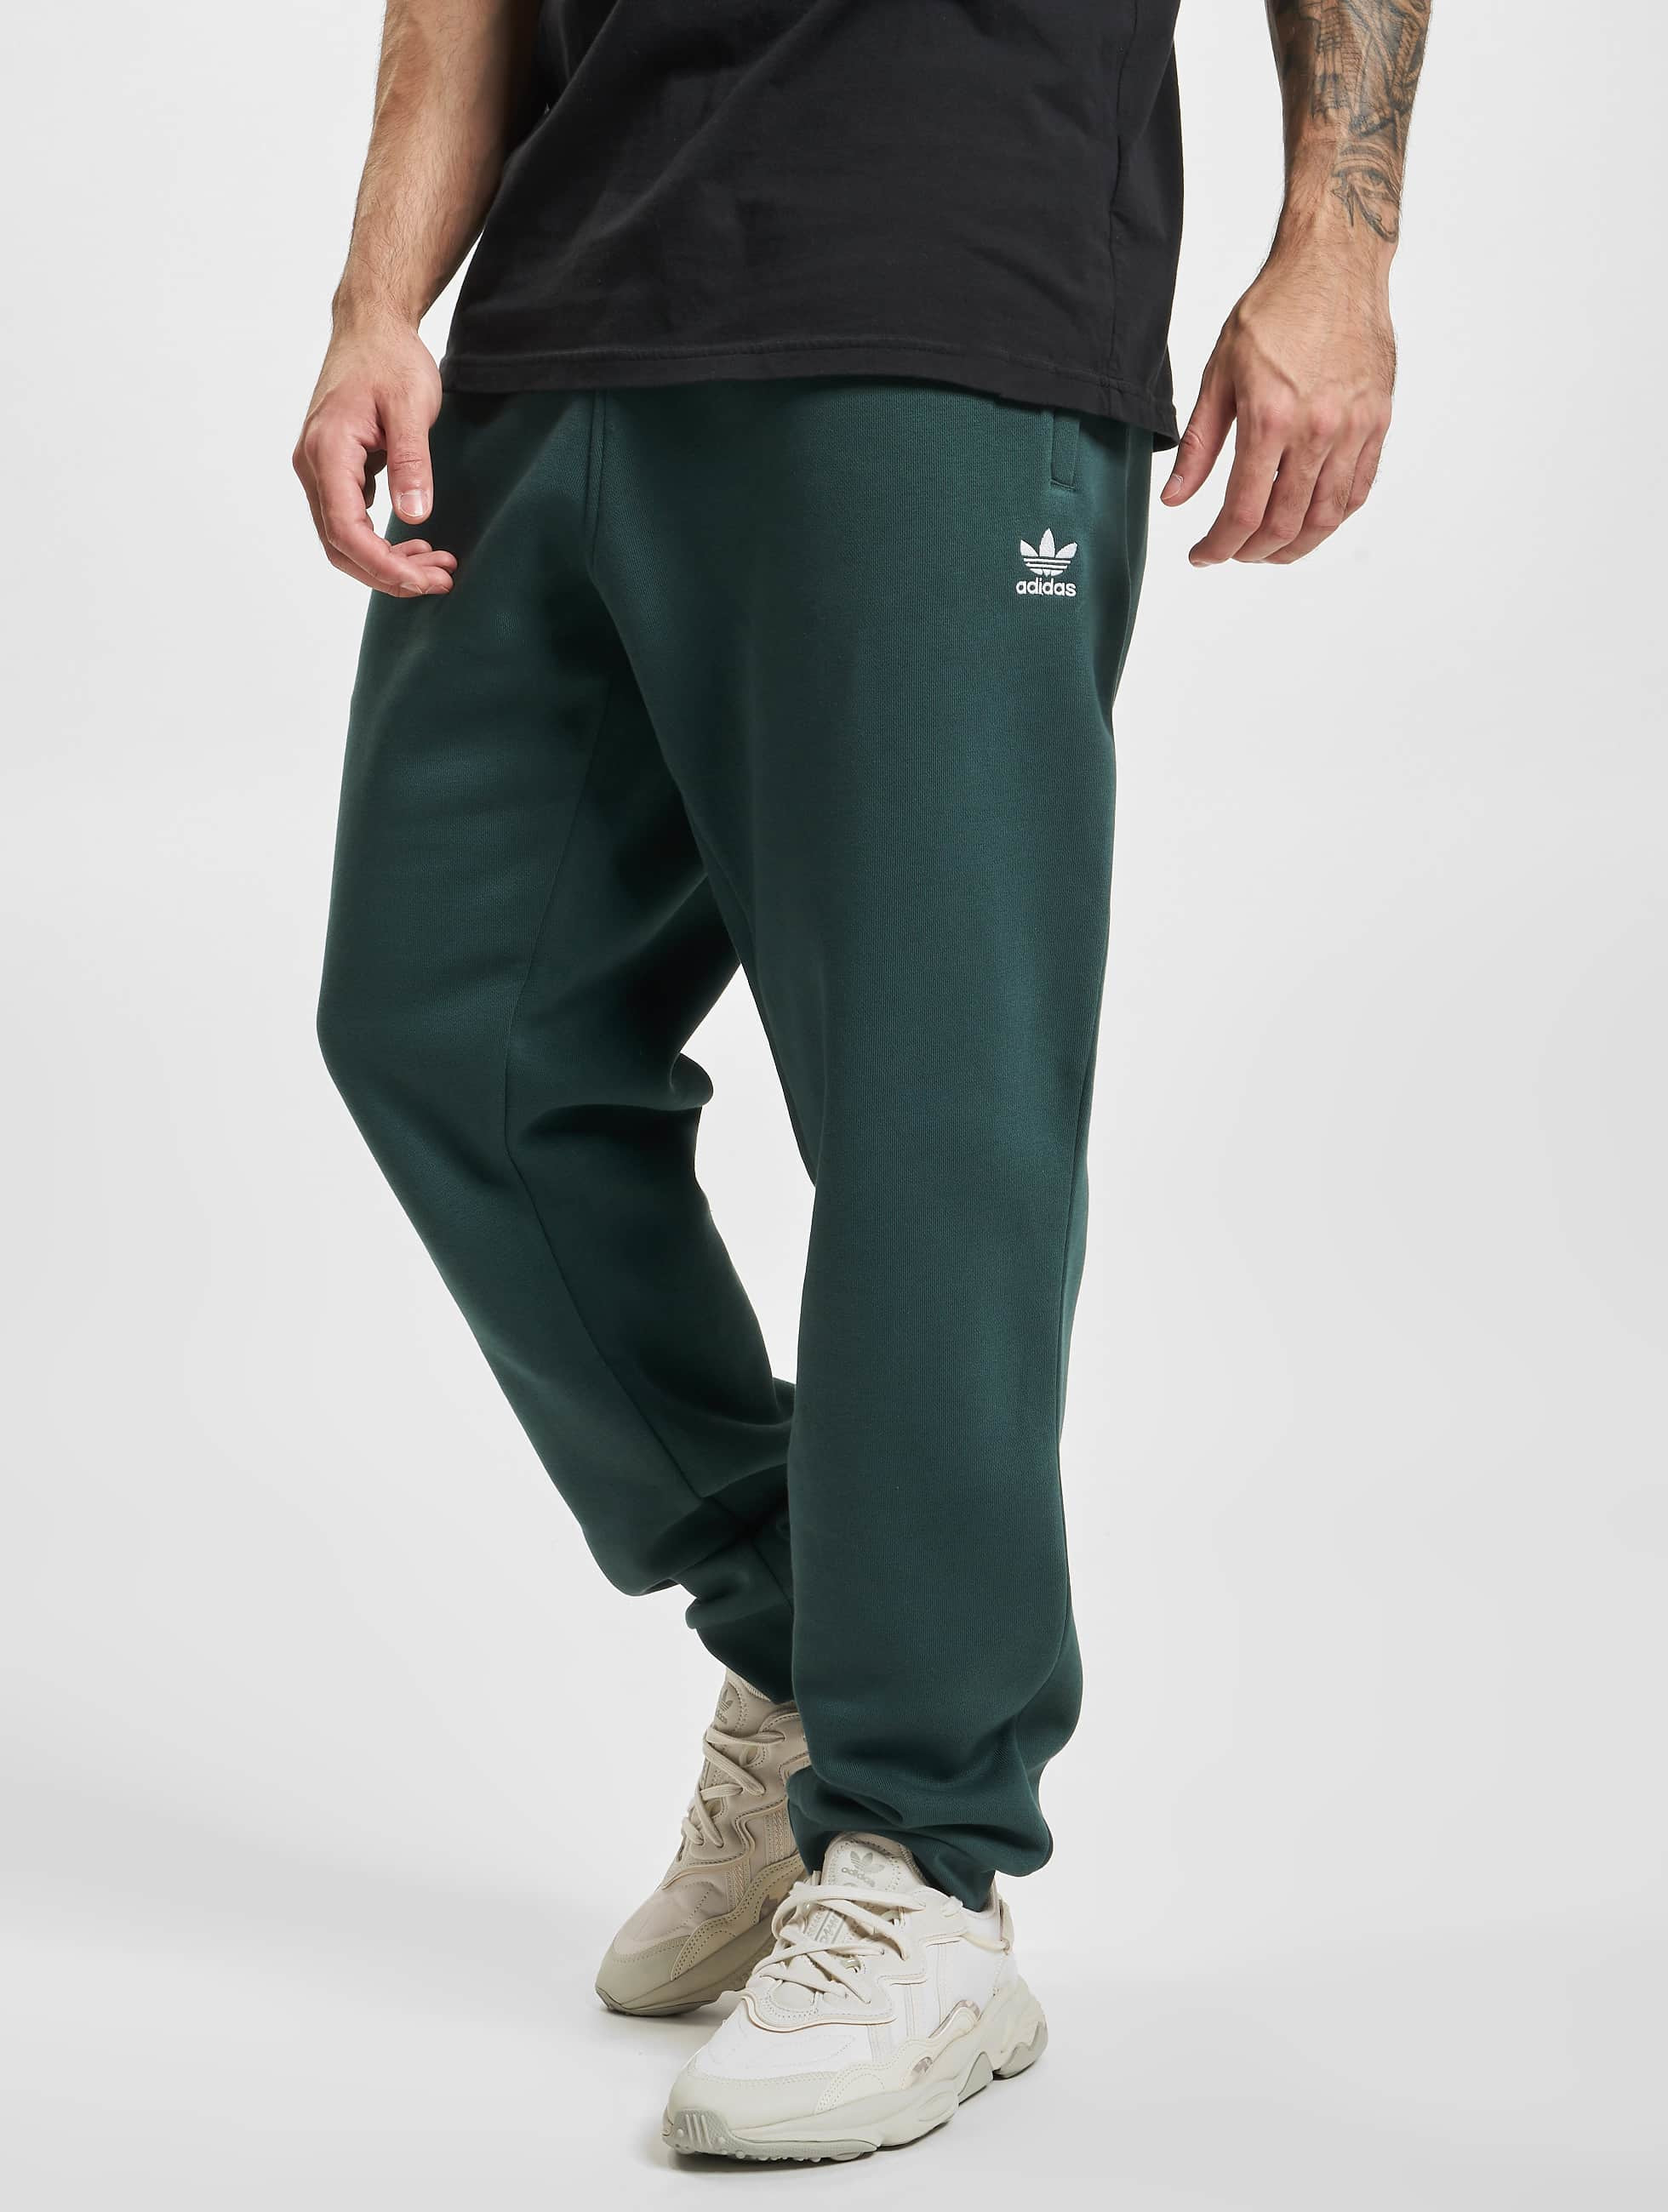 Comprometido Quinto Agarrar adidas Originals Pantalón / Pantalón deportivo Essentials en verde 929567